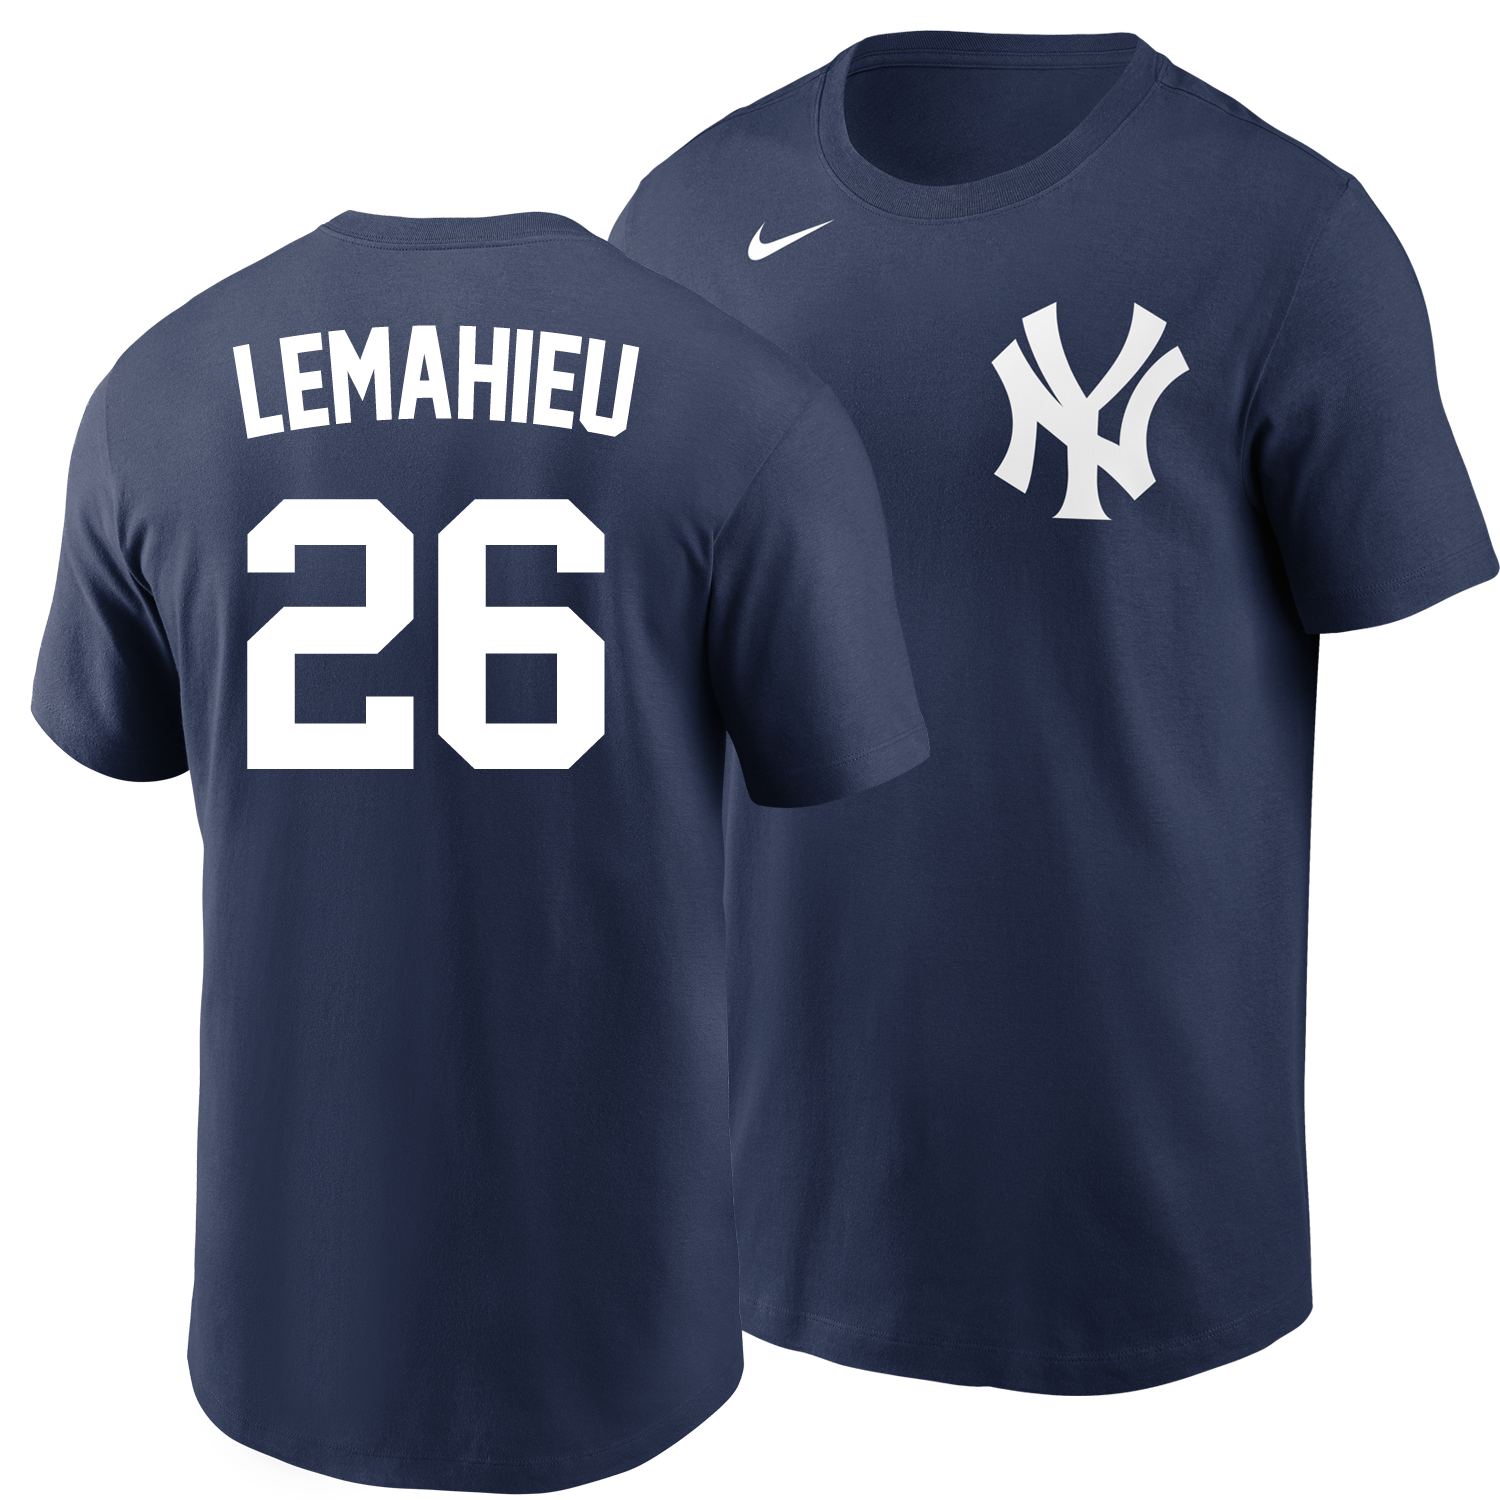  DJ LeMahieu New York Yankees Poster Print, Baseball